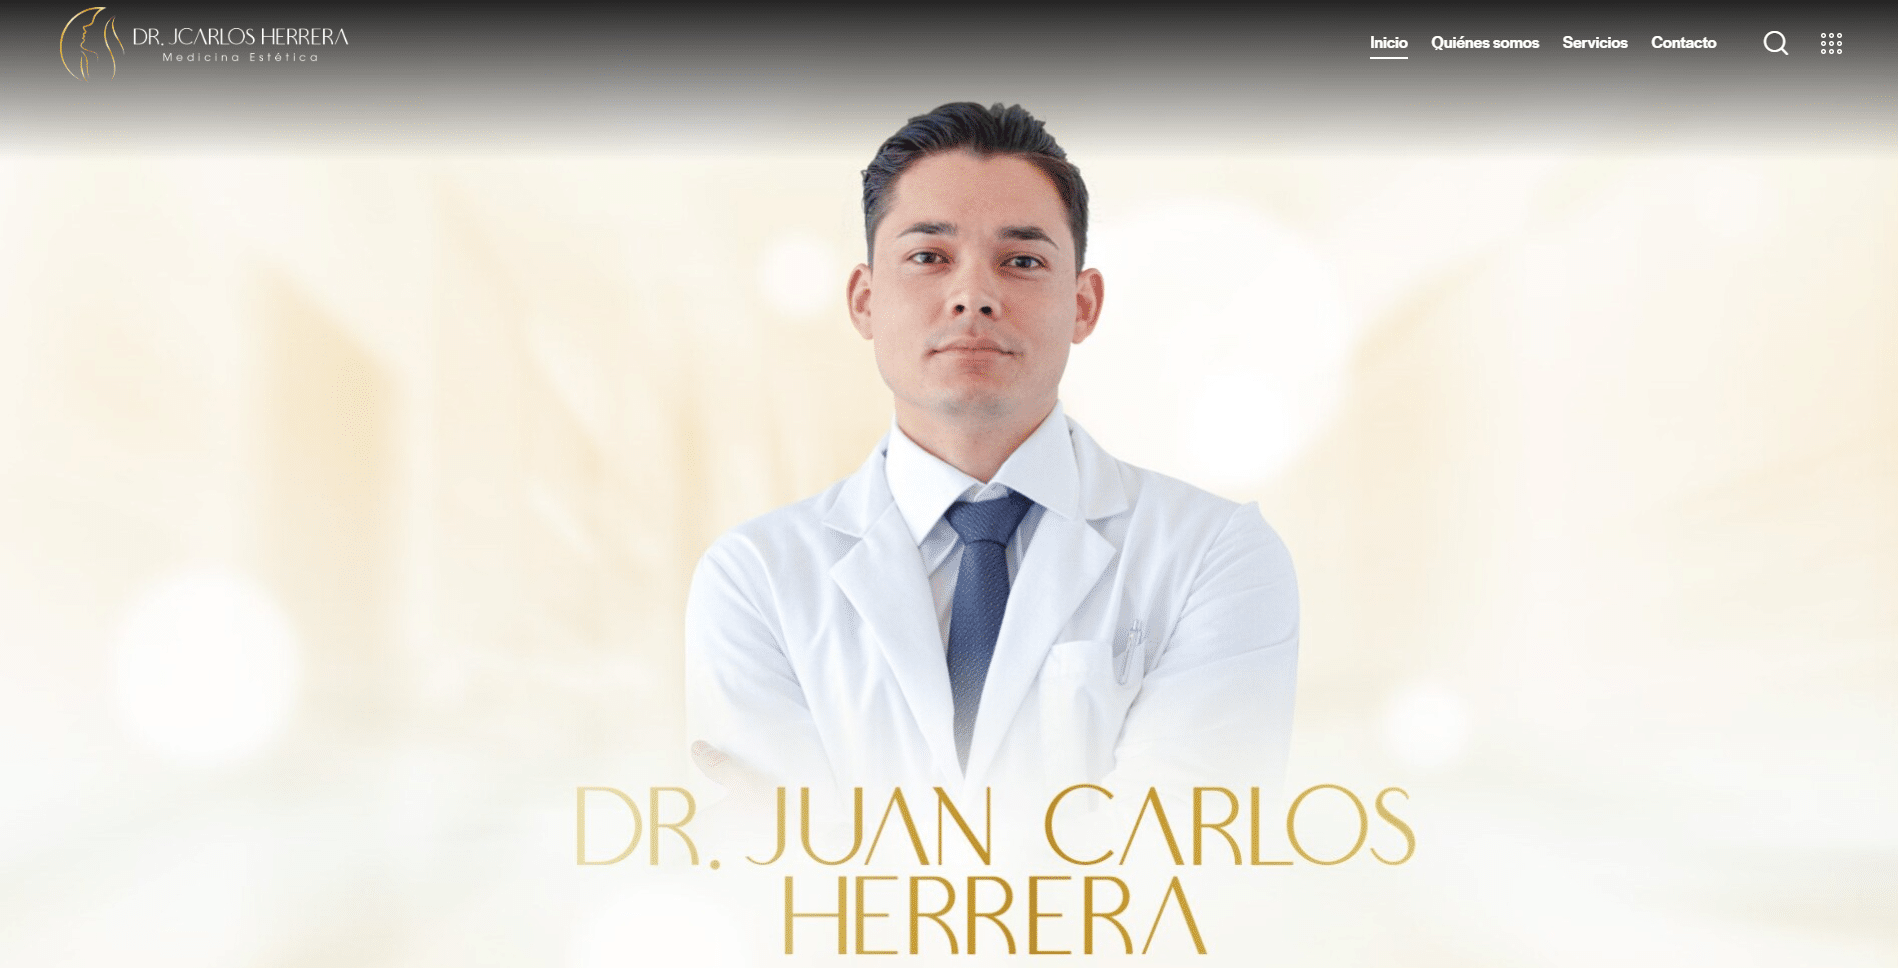 Dr. Juan Carlos Herrera